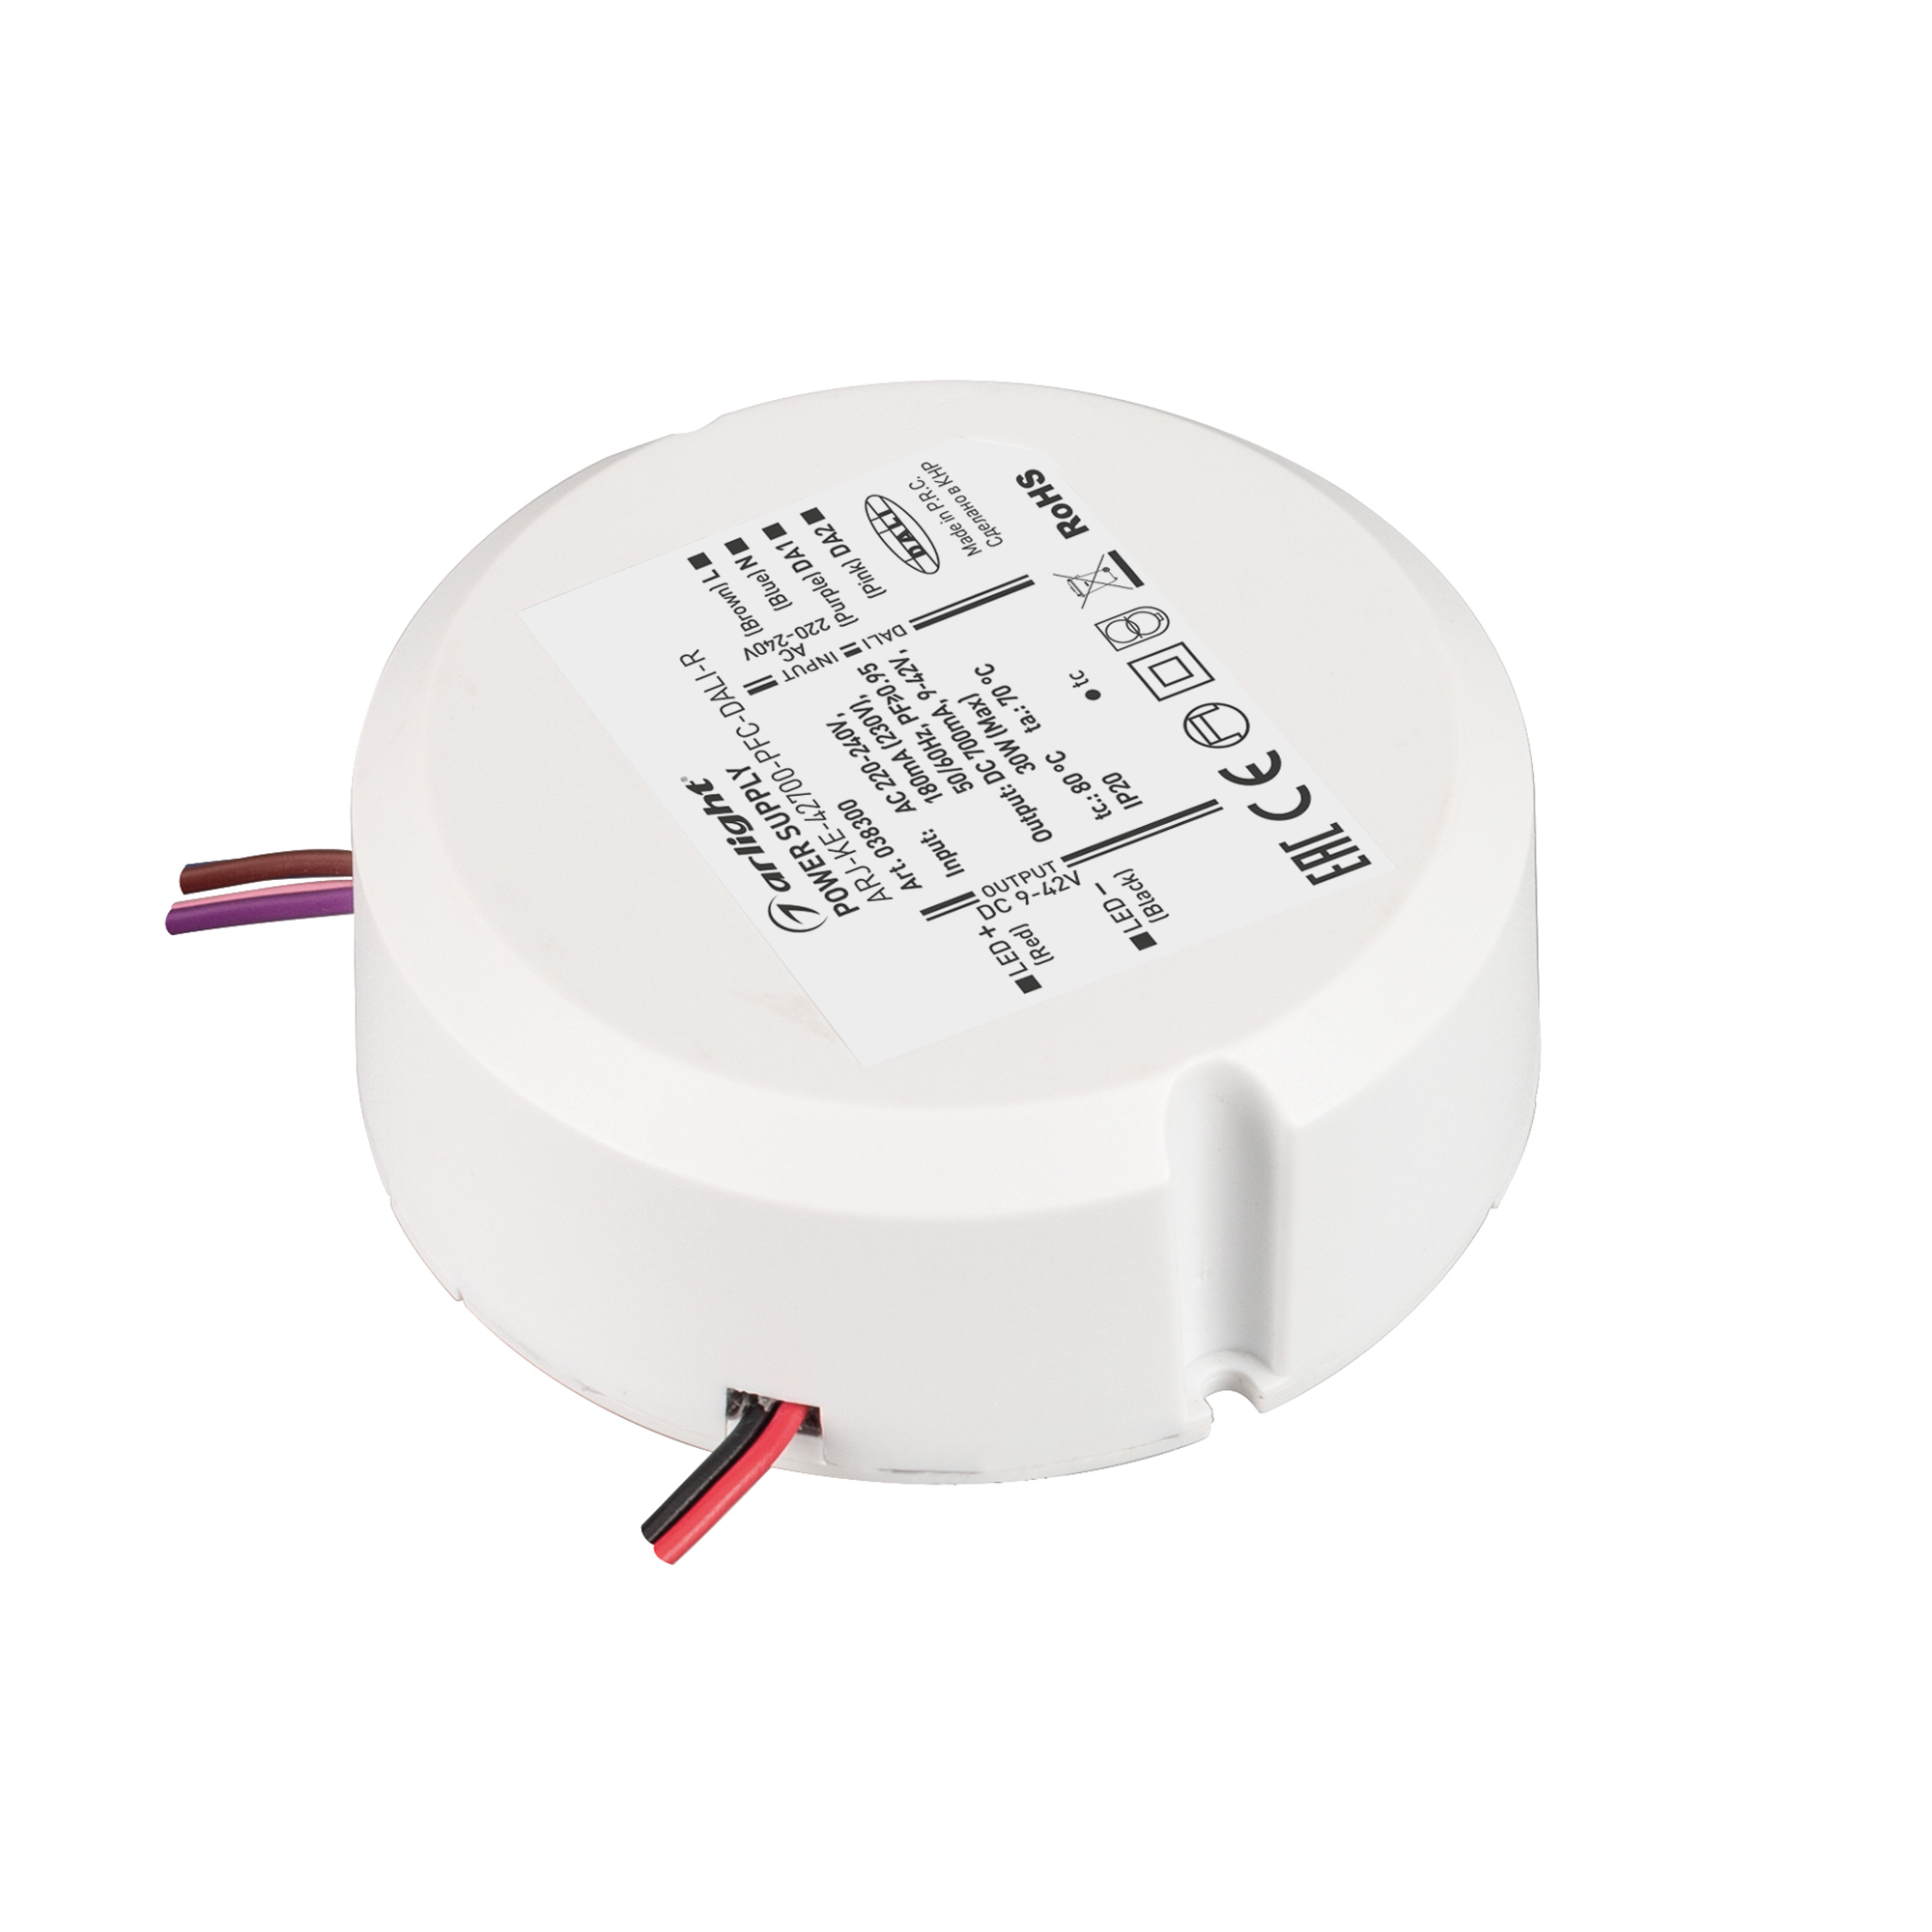 LED-драйвер (источник постоян. напряжения/тока для светодиодов) / Контроллер